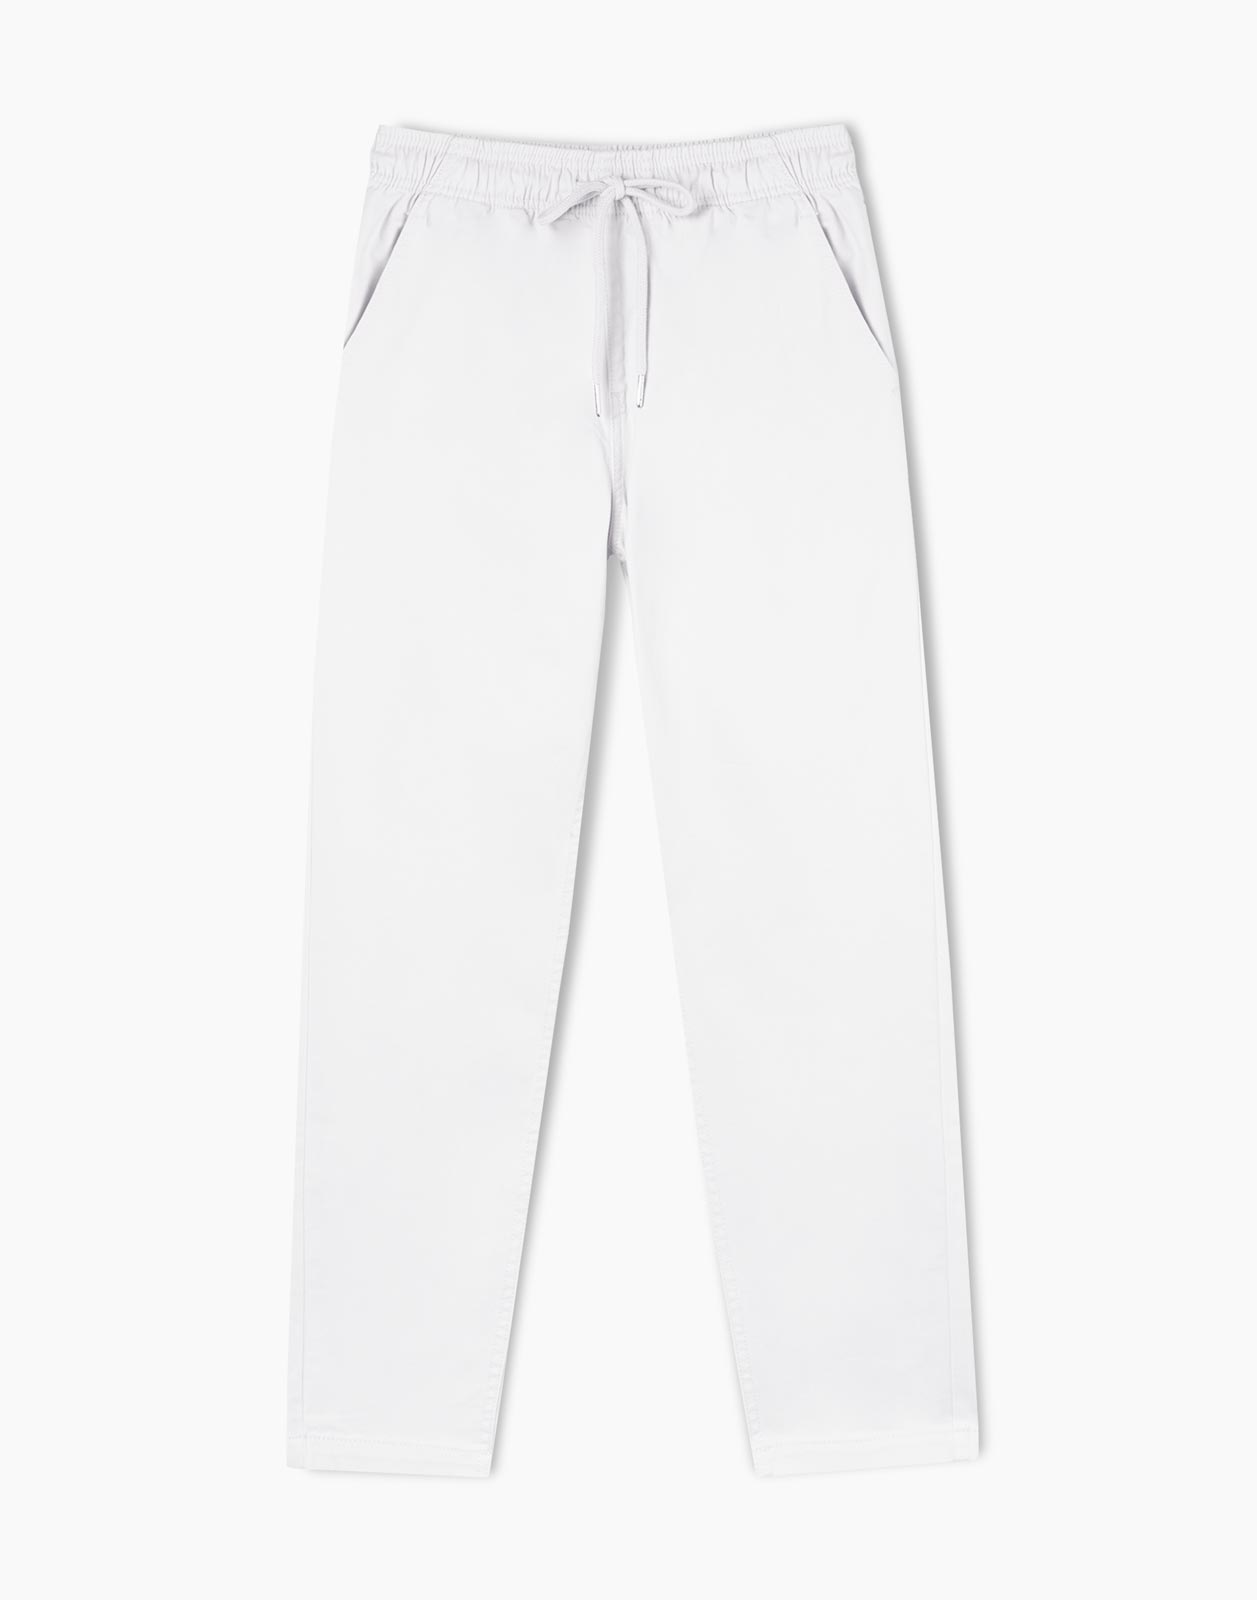 Джинсы женские Gloria Jeans GJN026682 белые XL